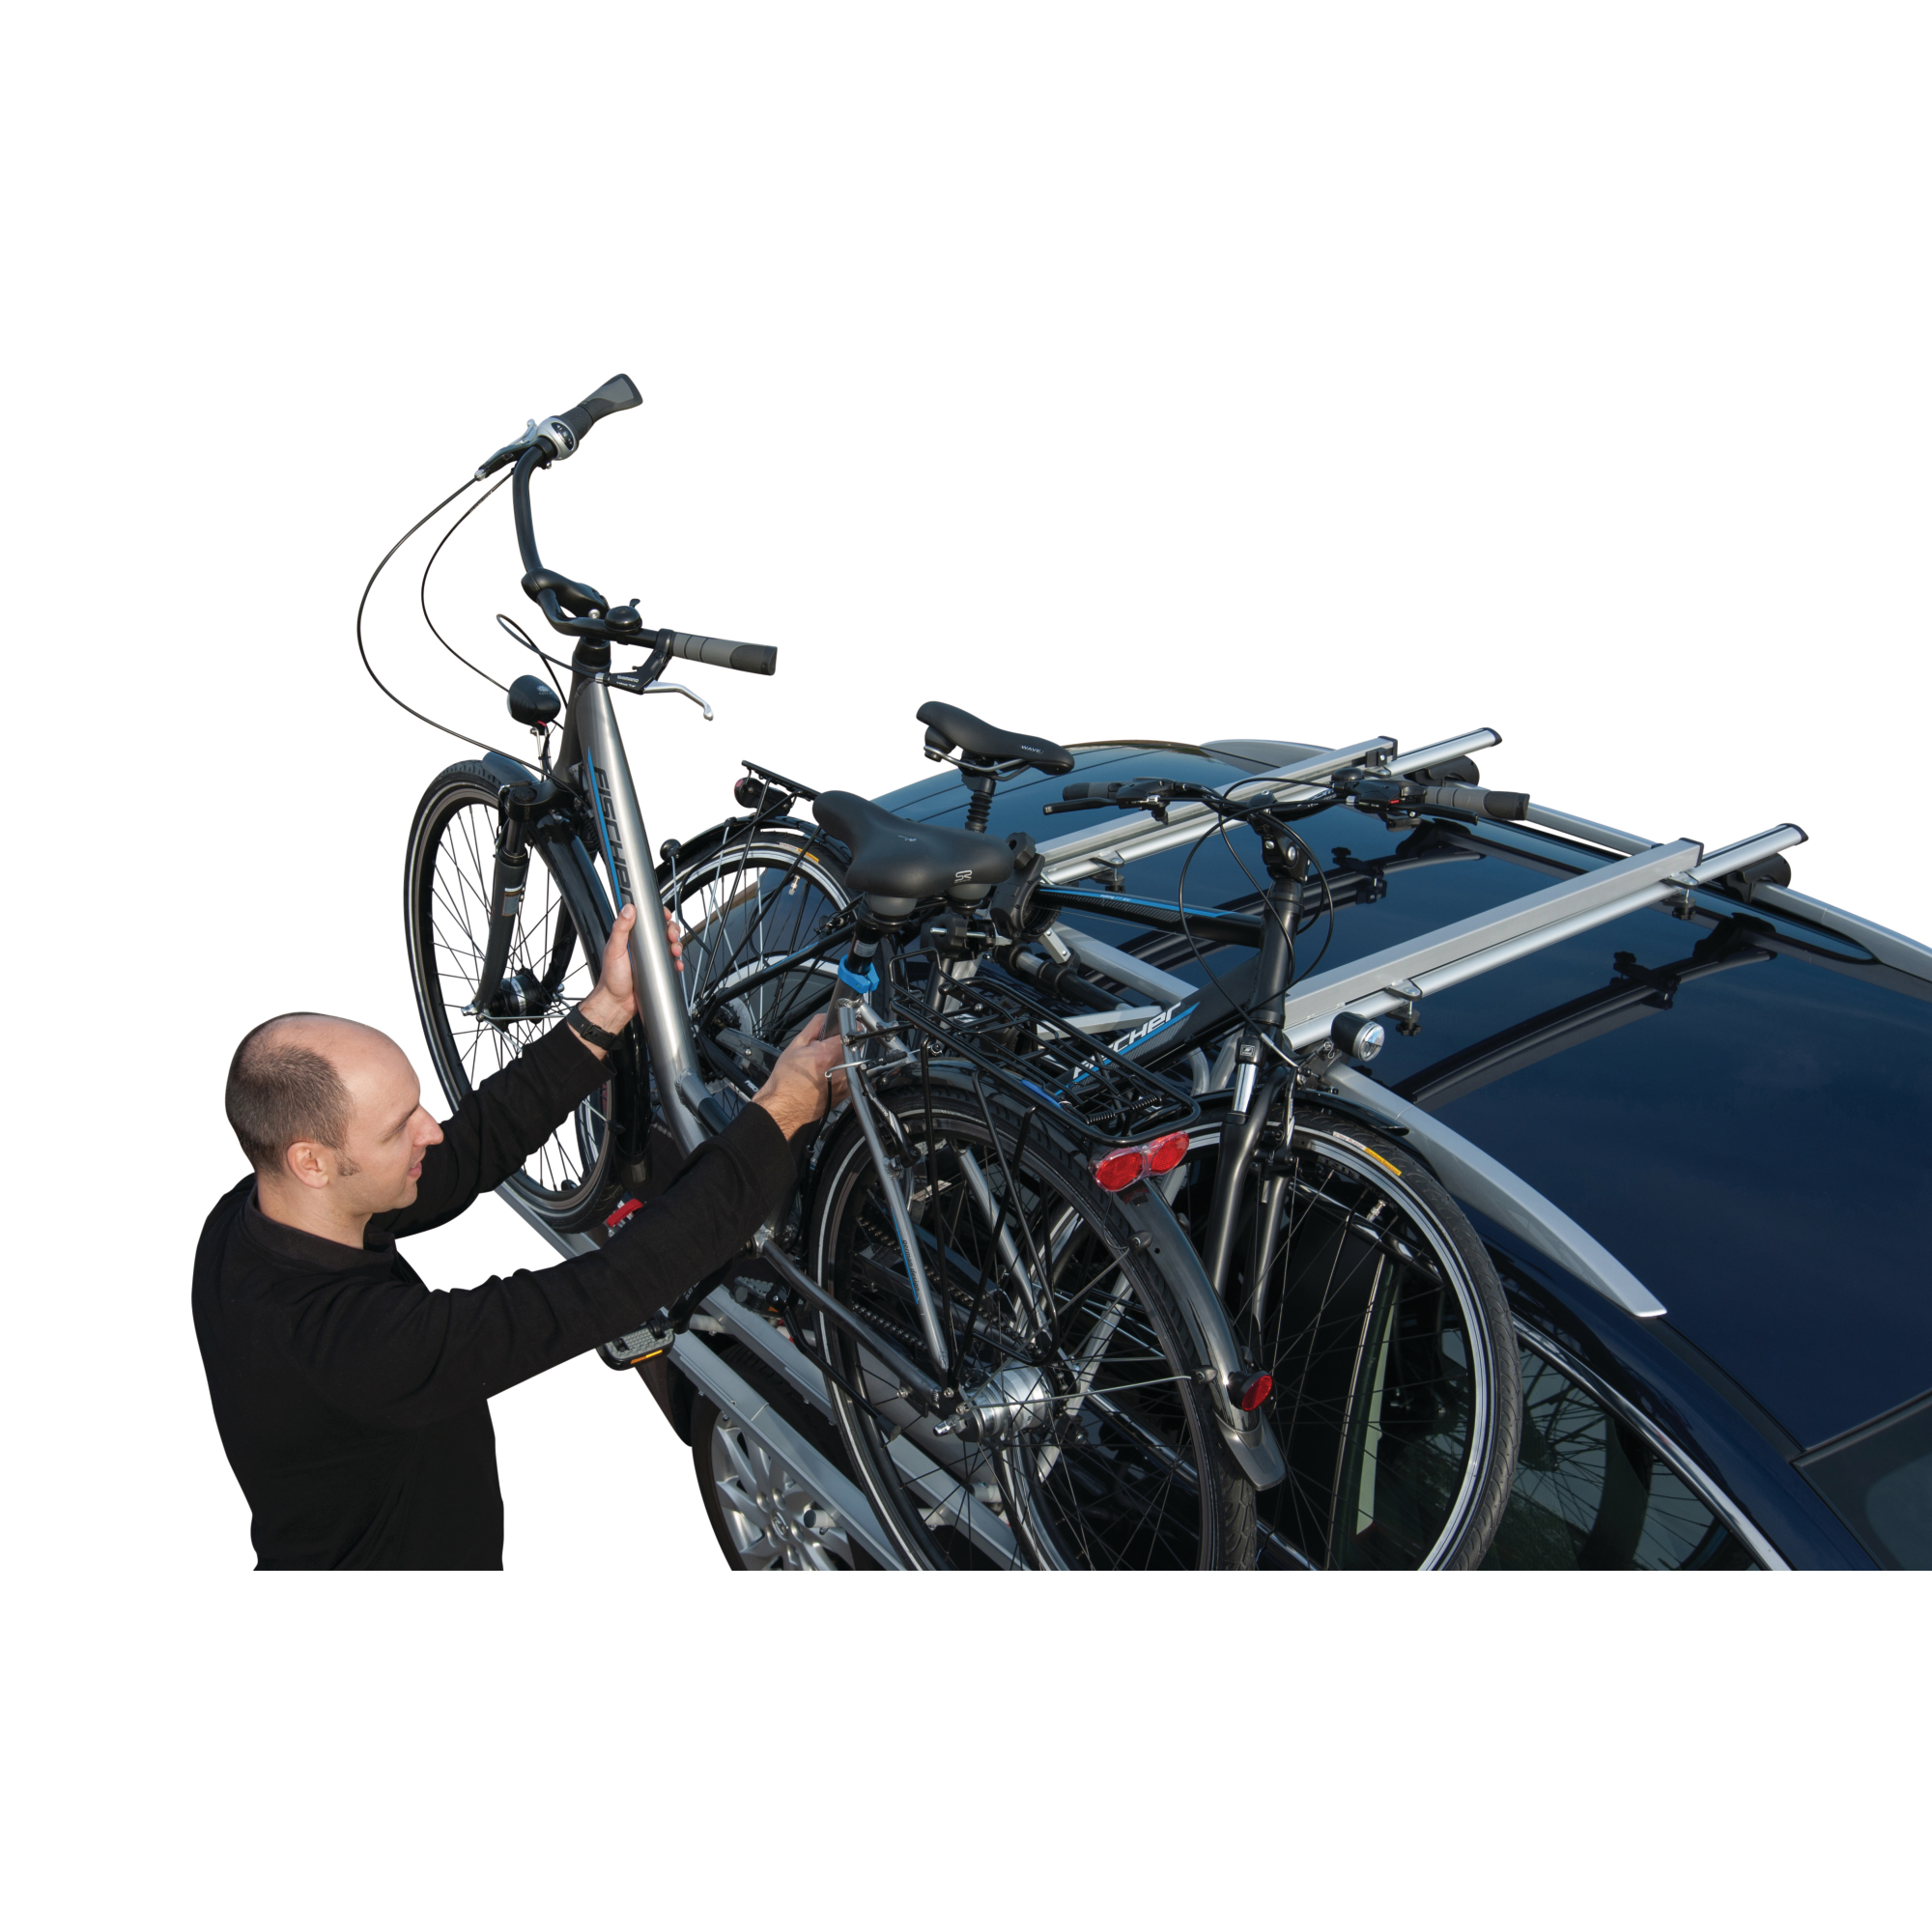 Dach-Fahrradträger mit Dachlift + product picture